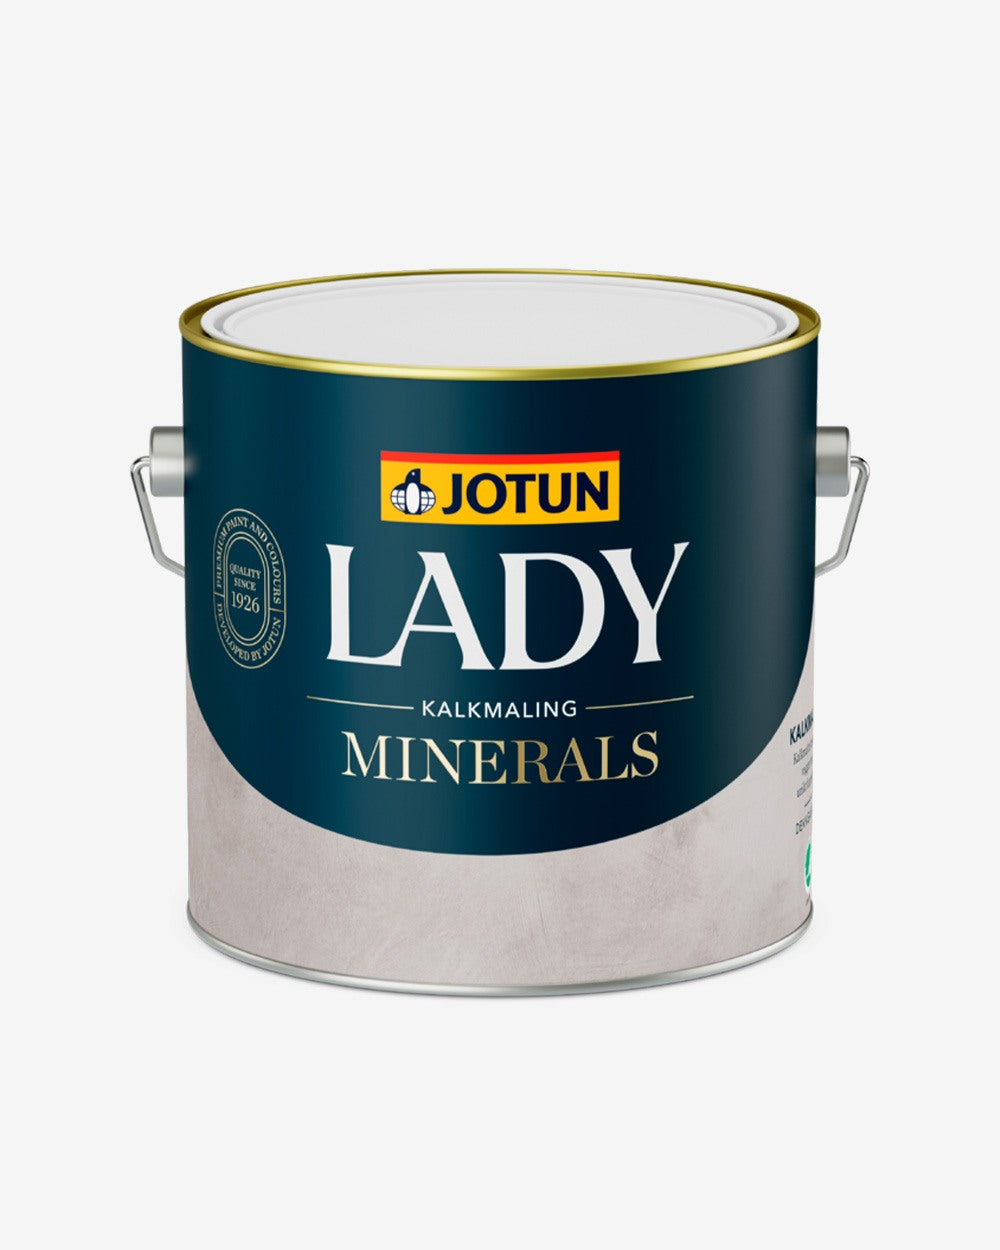 Jotun Lady Minerals Kalkmaling